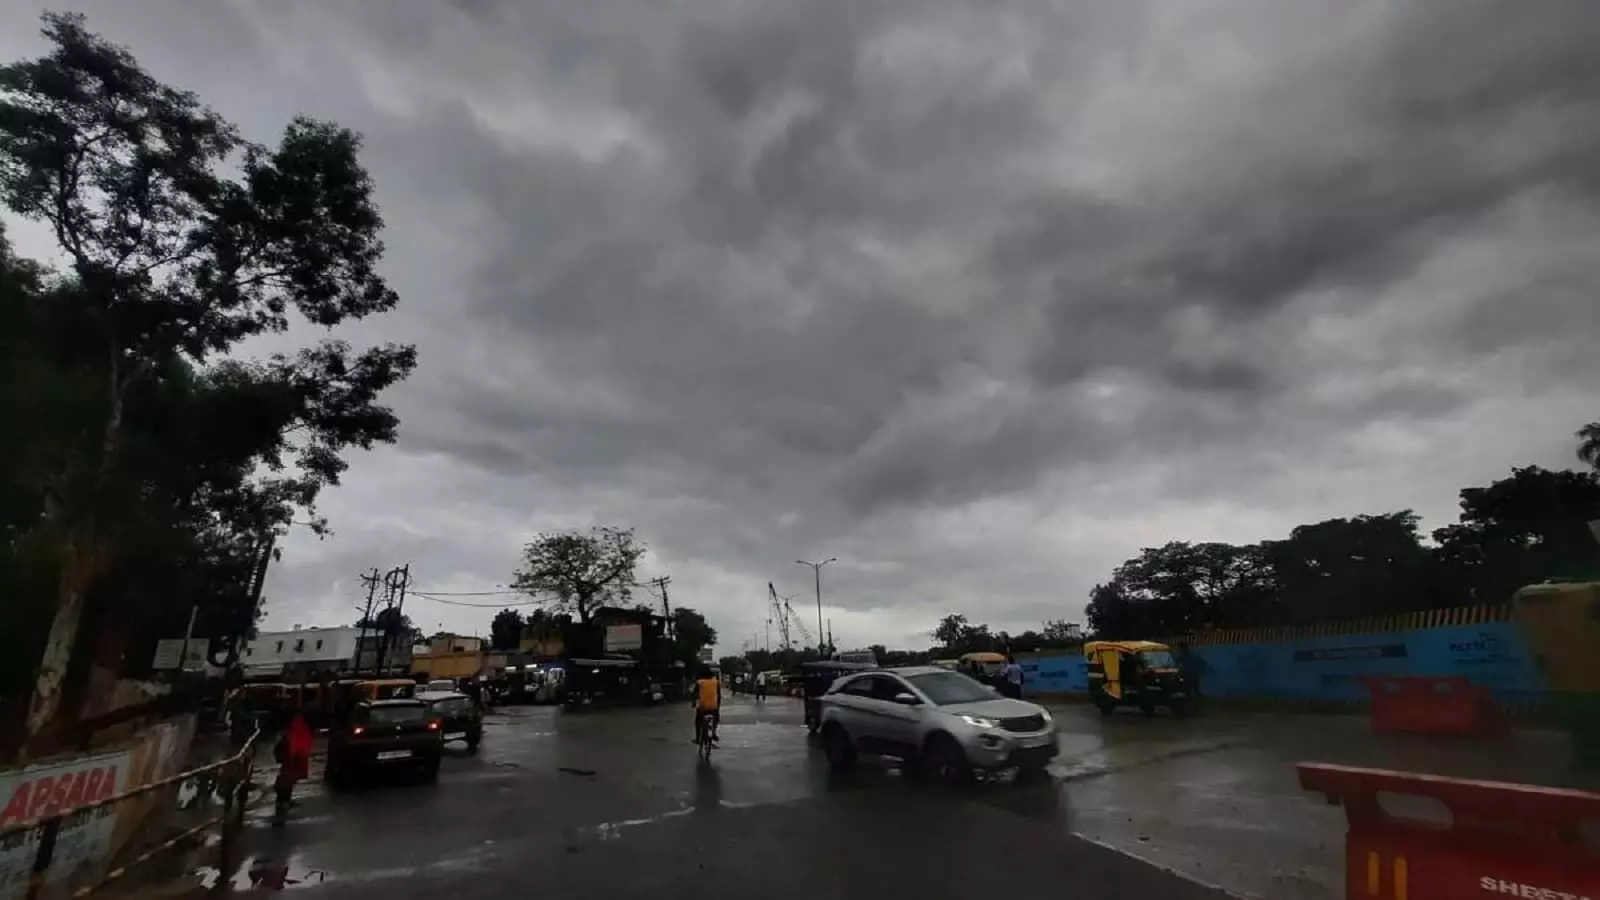 UP Weather Alert! यूपी में 26 मई तक आंधी-बारिश के आसार, 40 KM प्रति घंटा की रफ्तार से चलेगी हवा